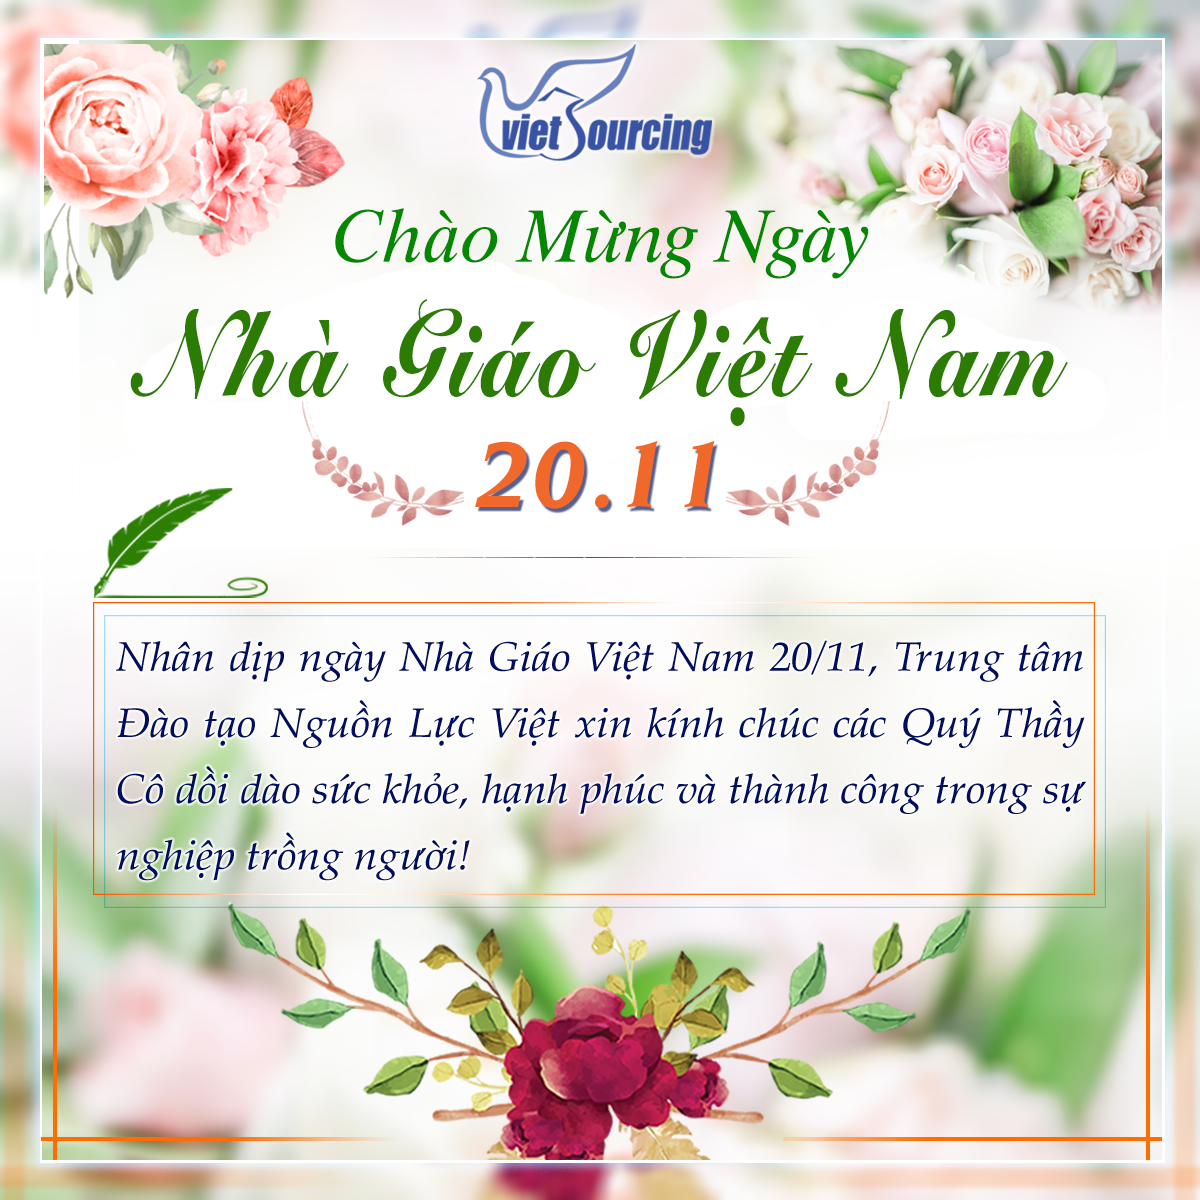 Chúc Mừng Ngày Nhà Giáo Việt Nam 20/11 - Trung Tâm Đào Tạo Nguồn Lực Việt